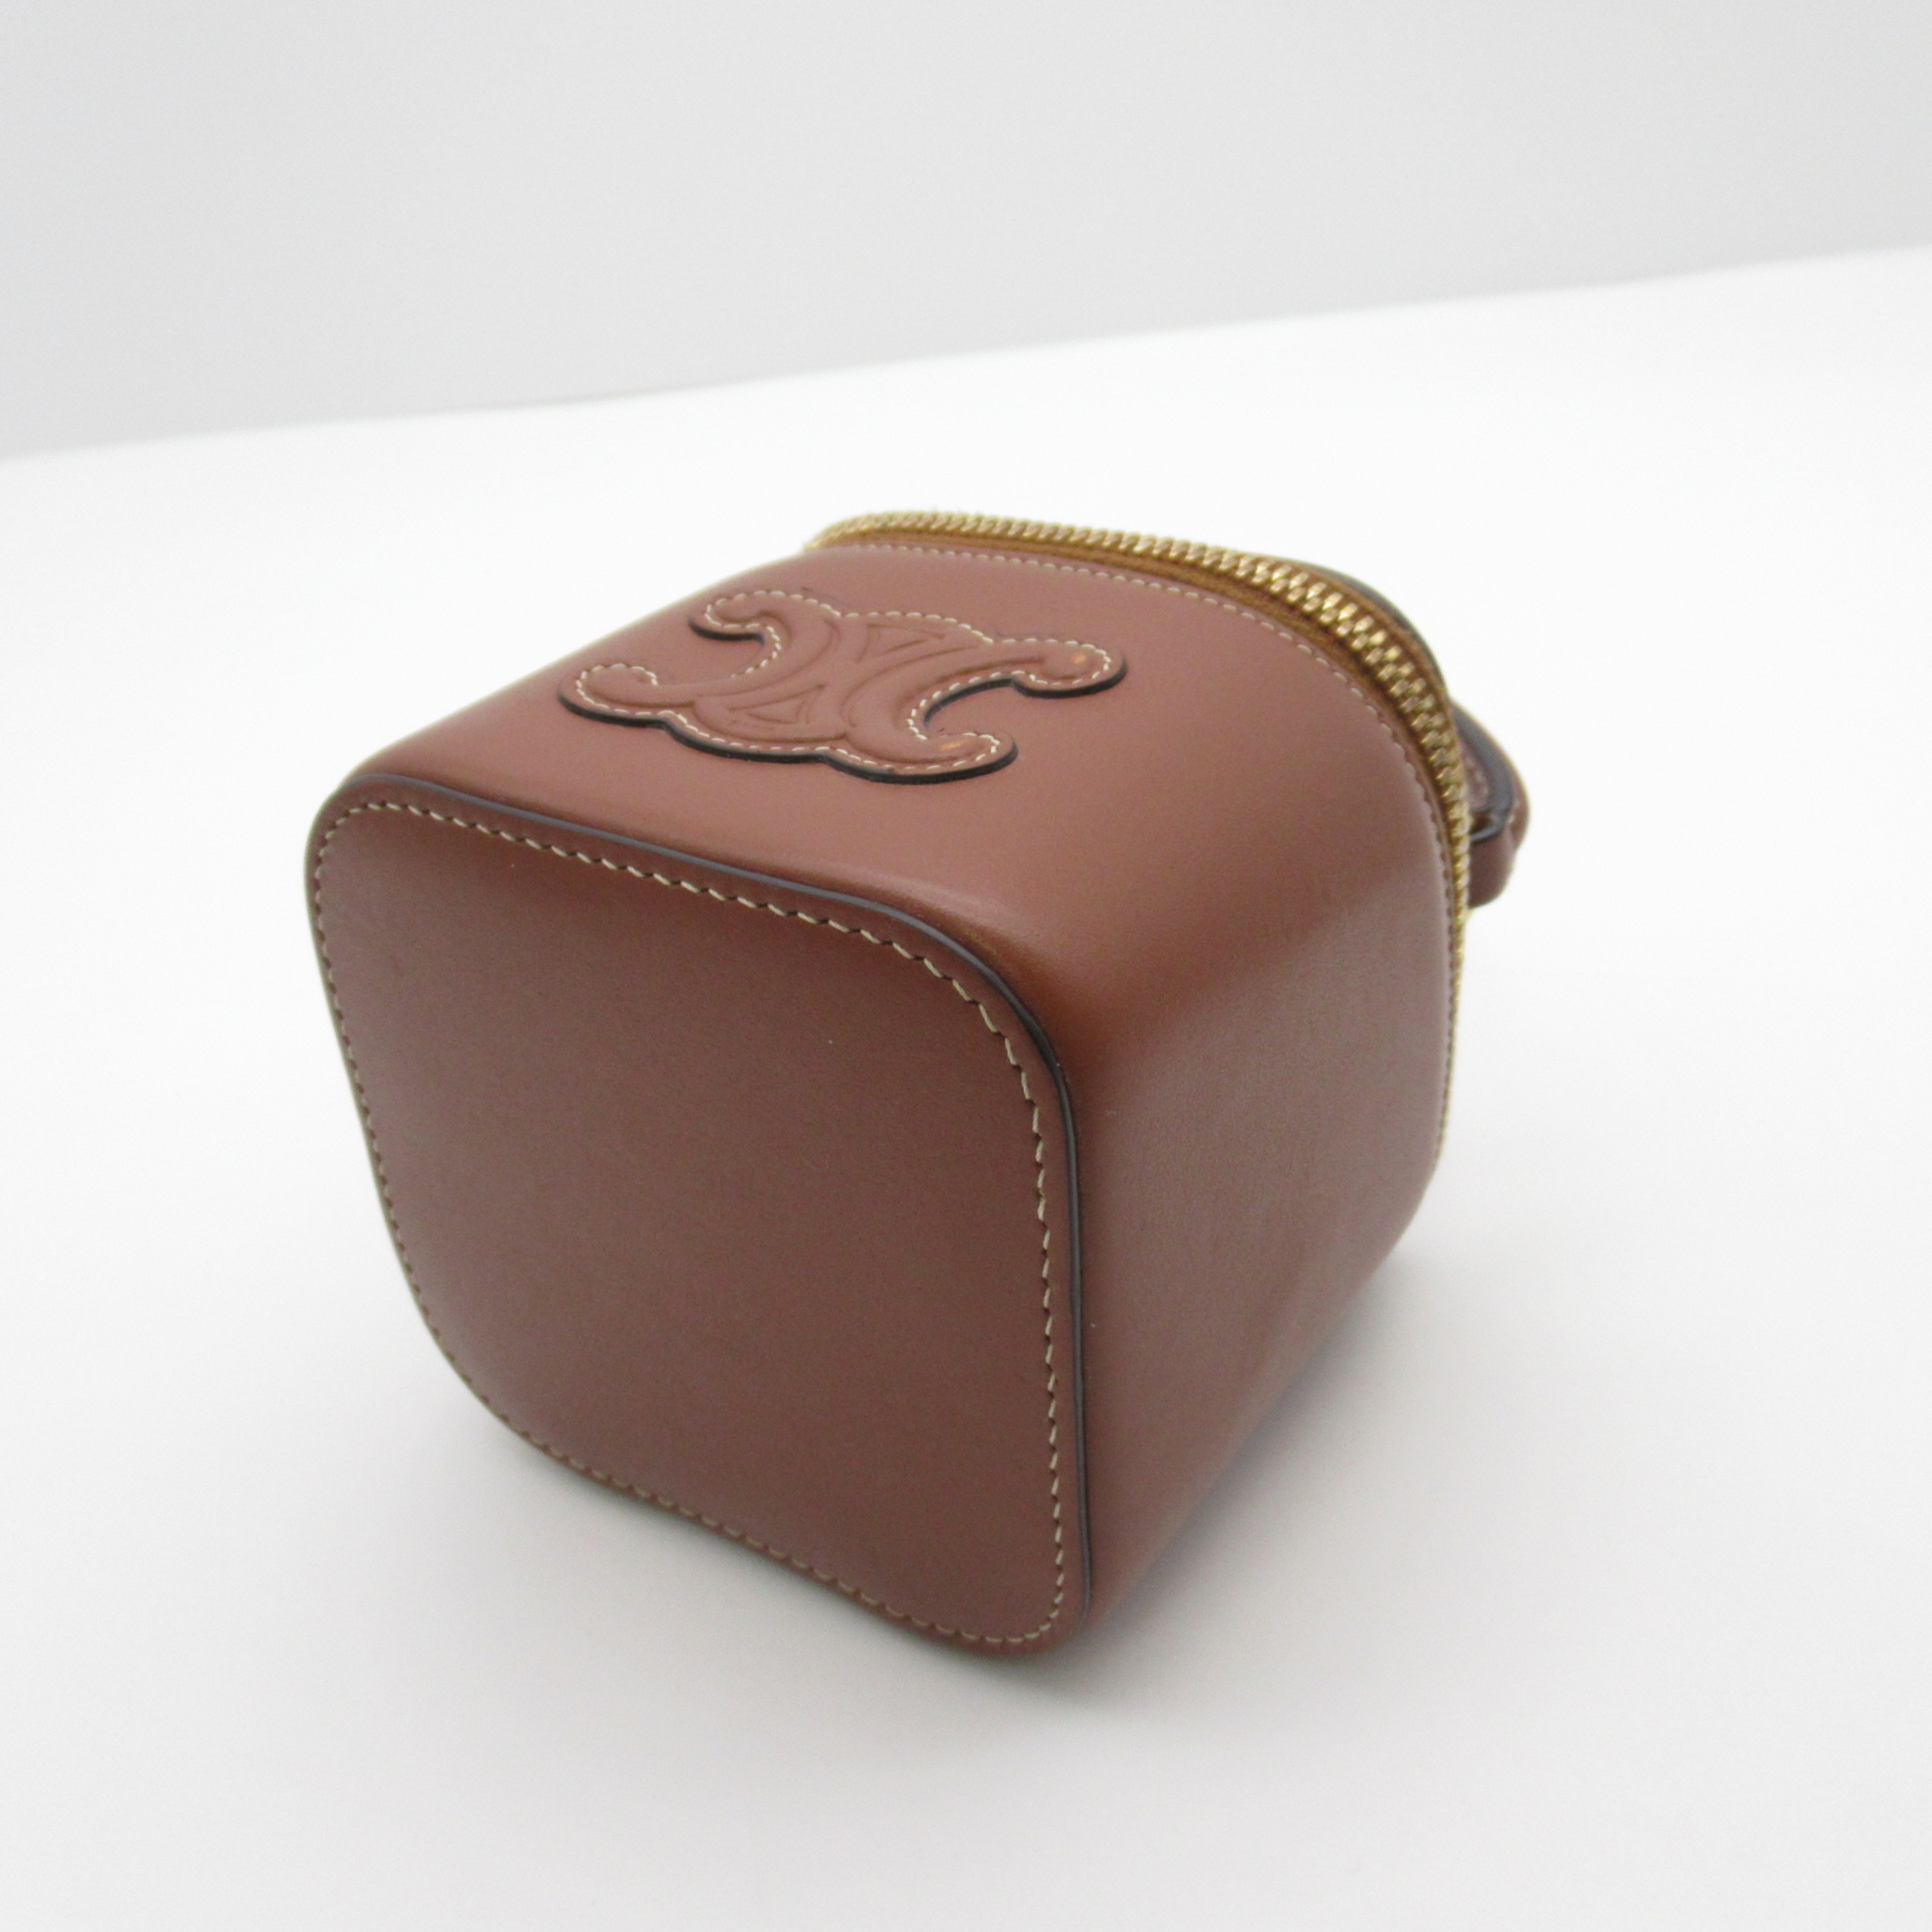 CELINE Mini Vanity Case Cuir Tri-Off Shoulder Bag Brown Tan Calfskin (cowhide) Smooth Scalf skin 10J763DR8.04LU